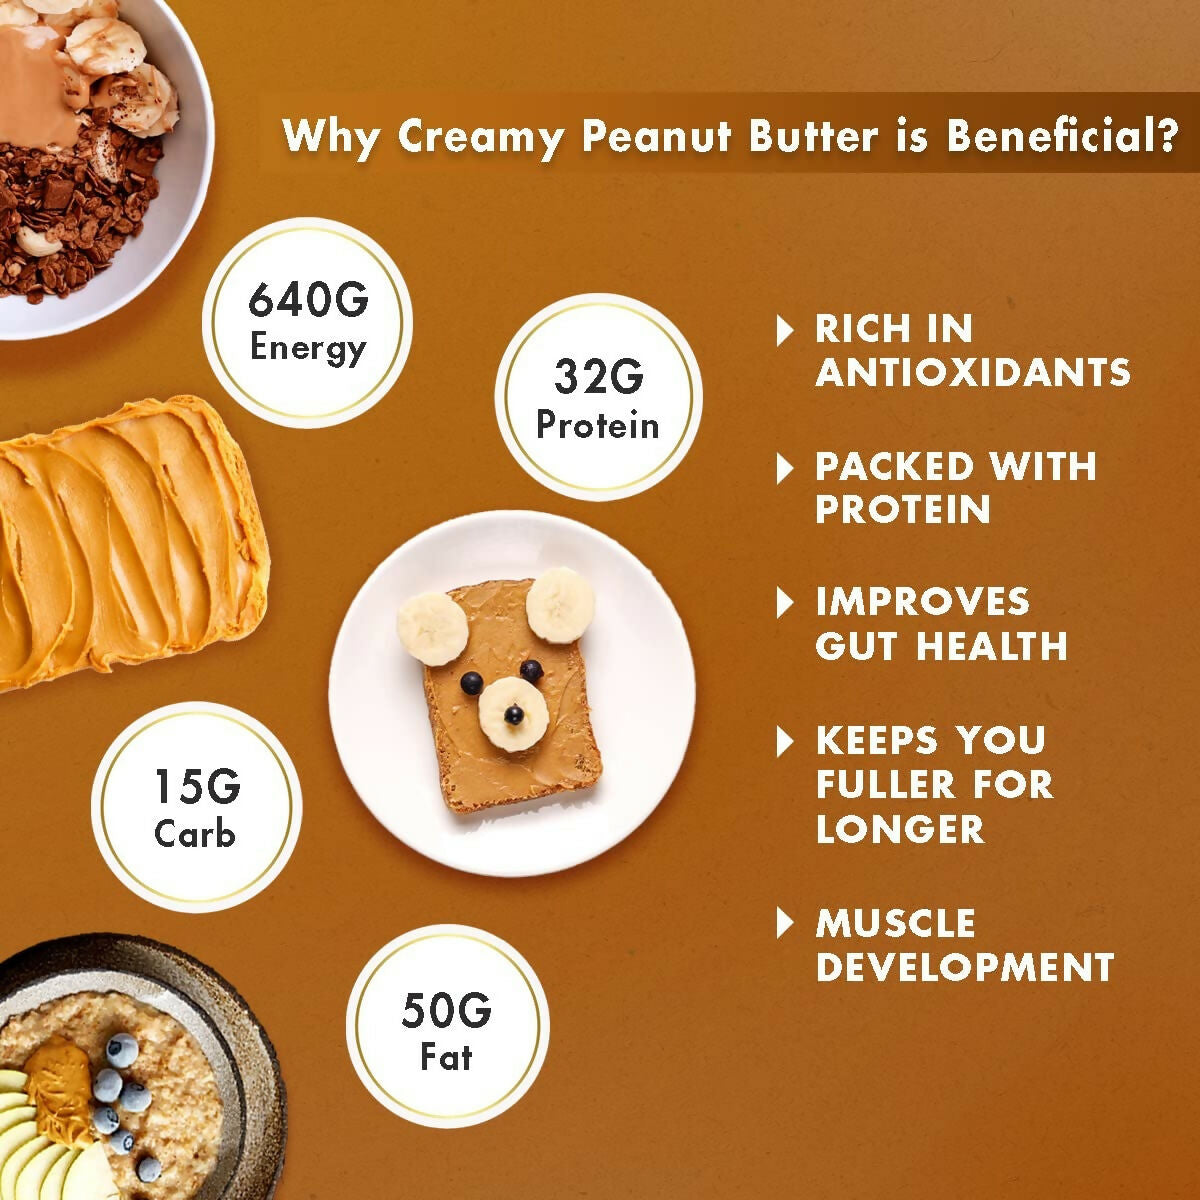 Sorich Organics All Natural Creamy Peanut Buttery - Distacart